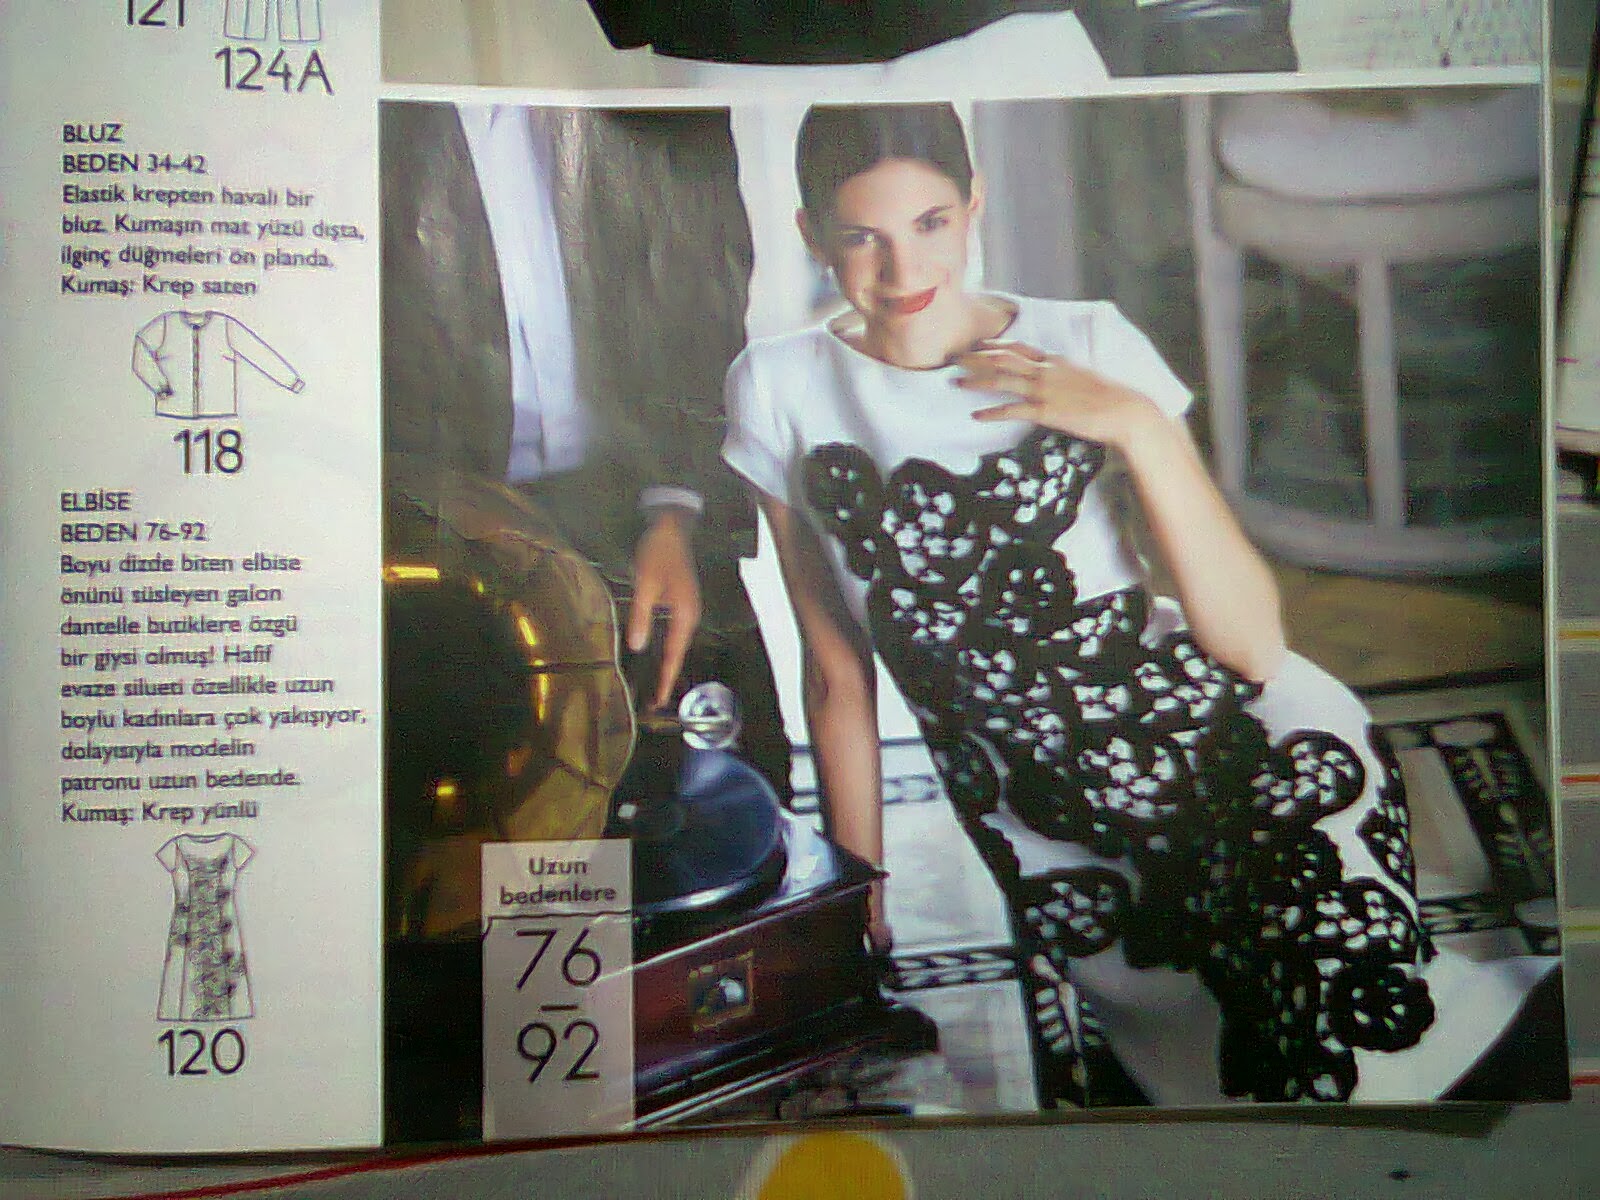 dikmeye basladigim elbise burda dergisi ekim 2011 sayisindan 2